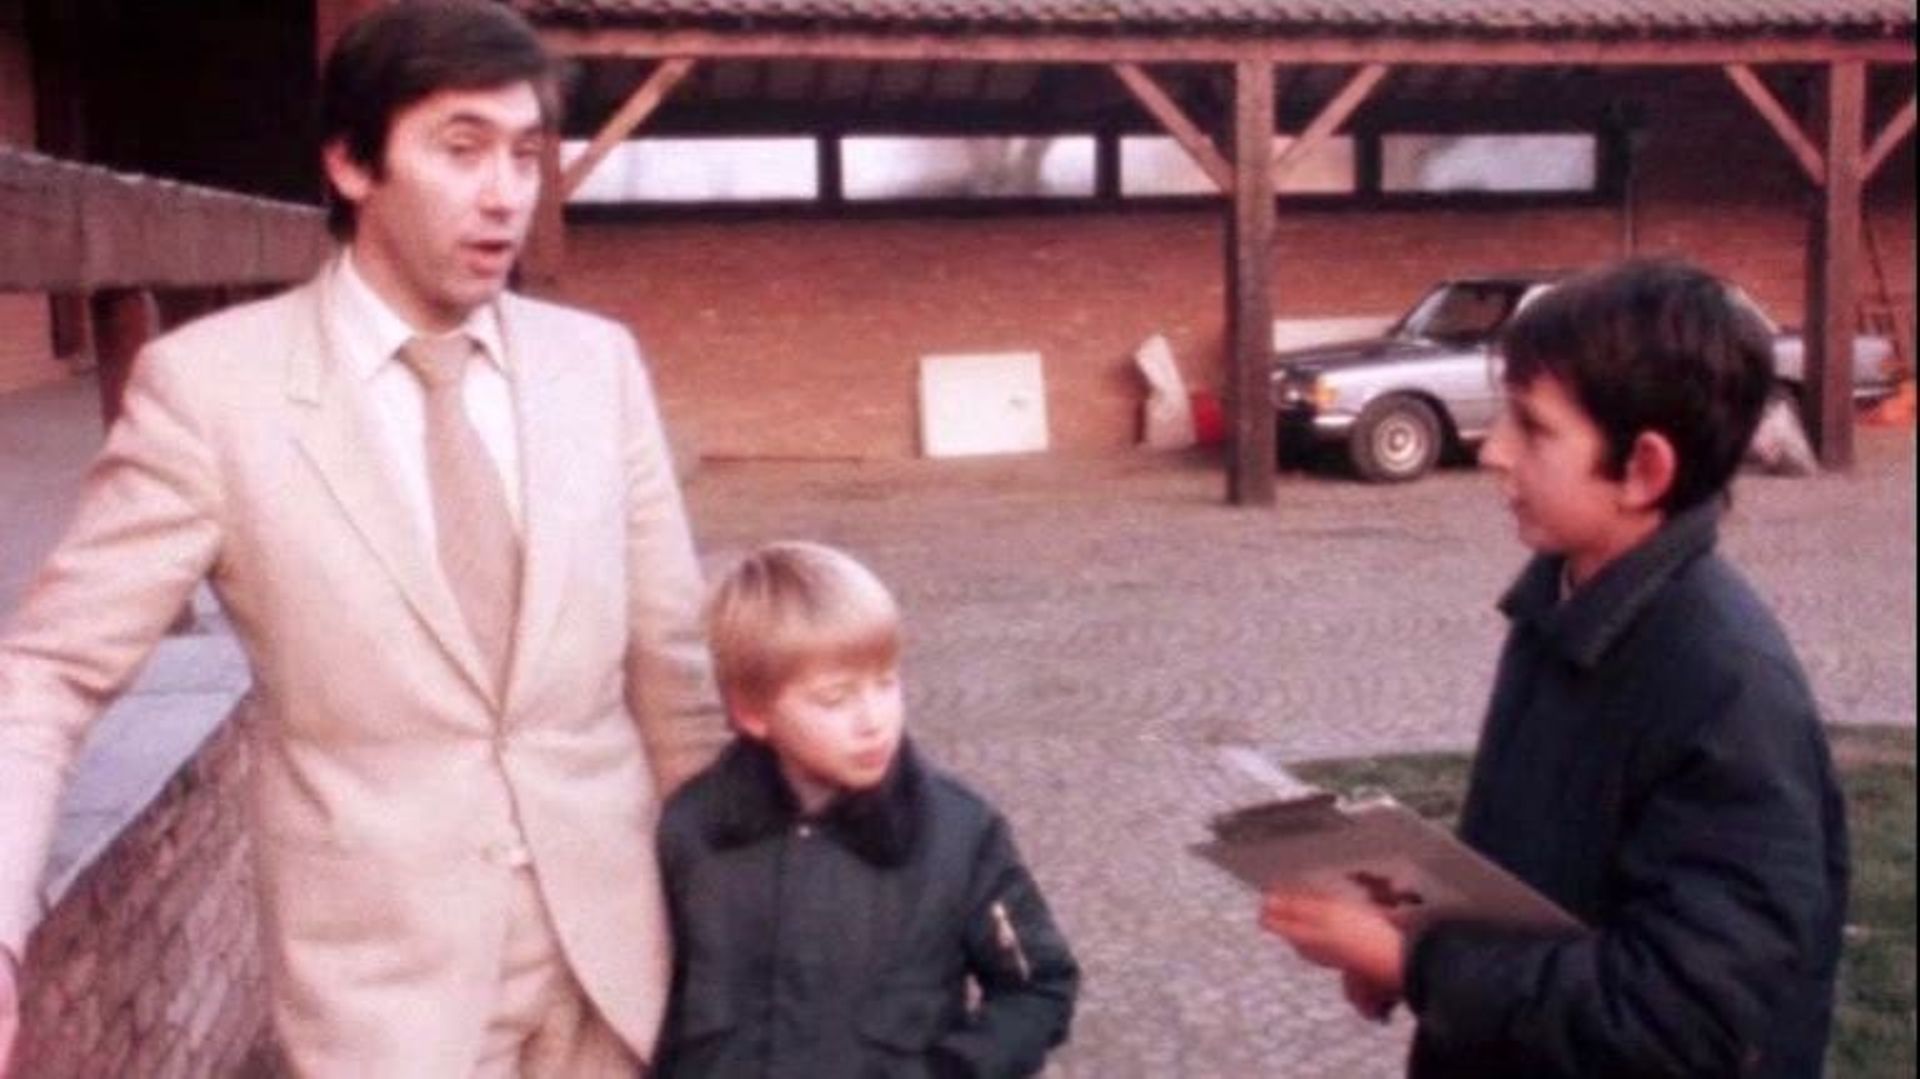 Axel Merckx à propos de son papa: "Sabrina et moi, nous avons été élevés par notre maman. Je n’en veux pas à papa. Au contraire, il nous a sacrifié une partie de sa vie."